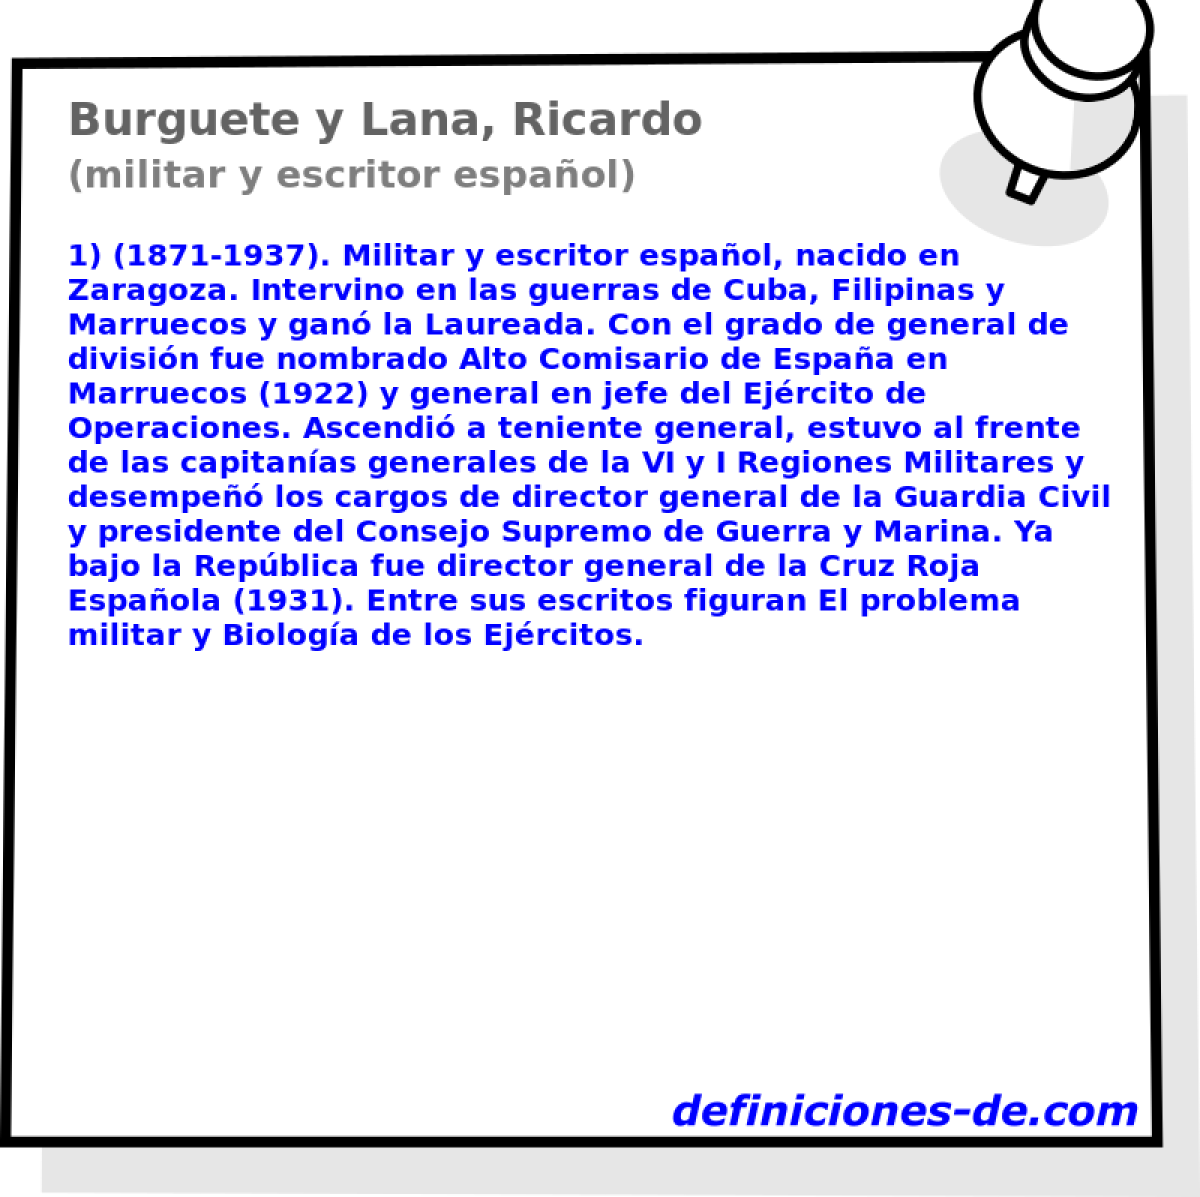 Burguete y Lana, Ricardo (militar y escritor espaol)